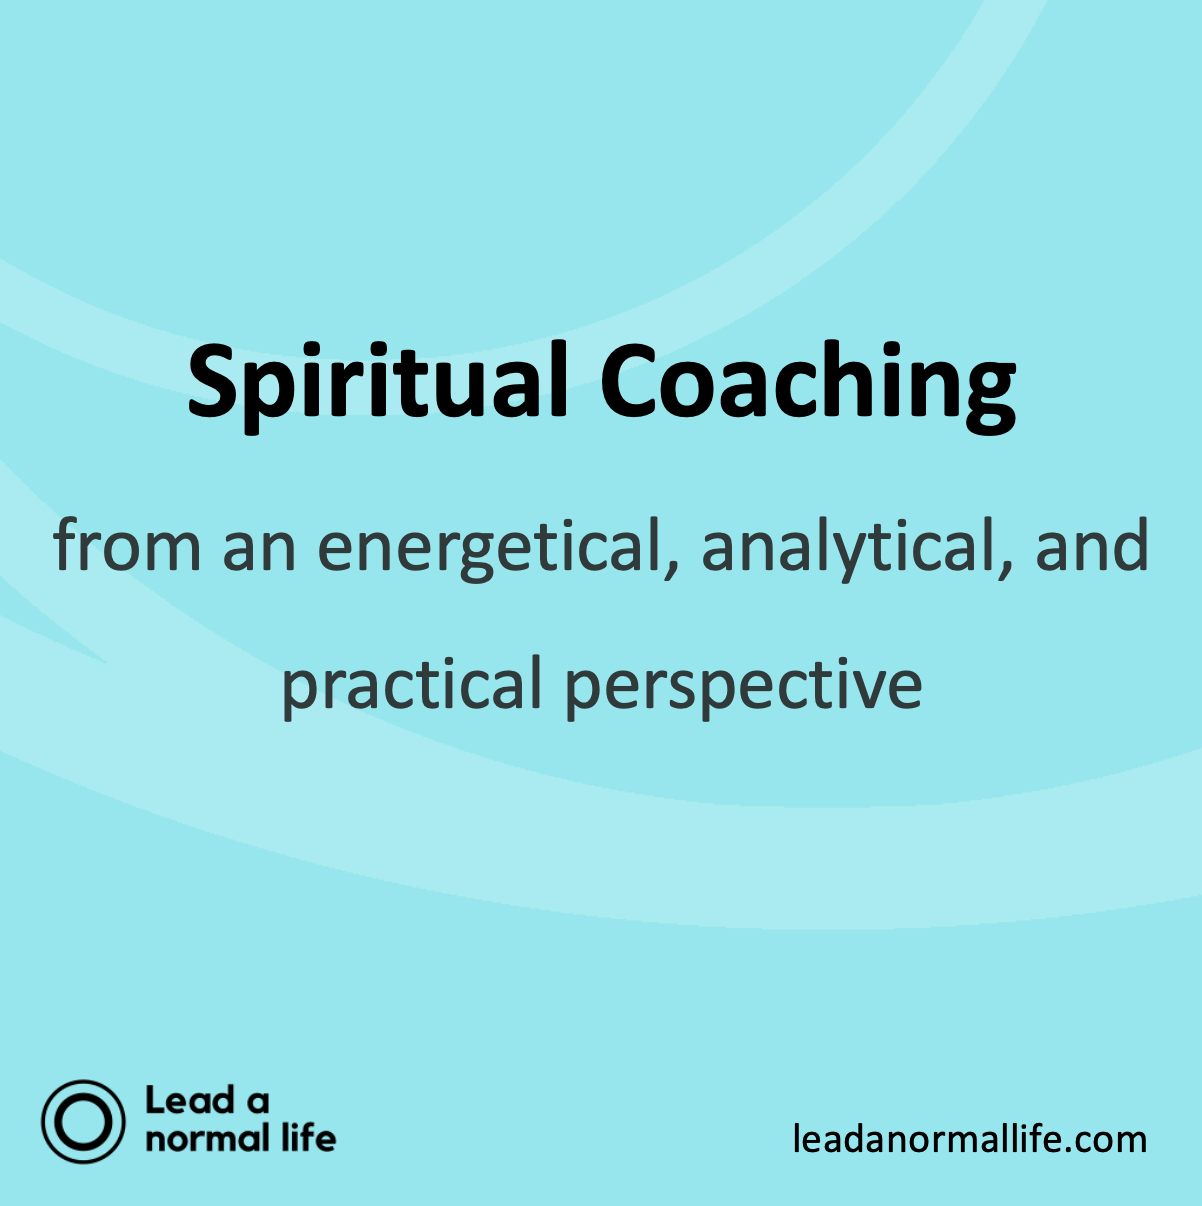 Spirituele coaching vanuit een energetisch, analytisch én praktisch perspectief. Lead a normal life